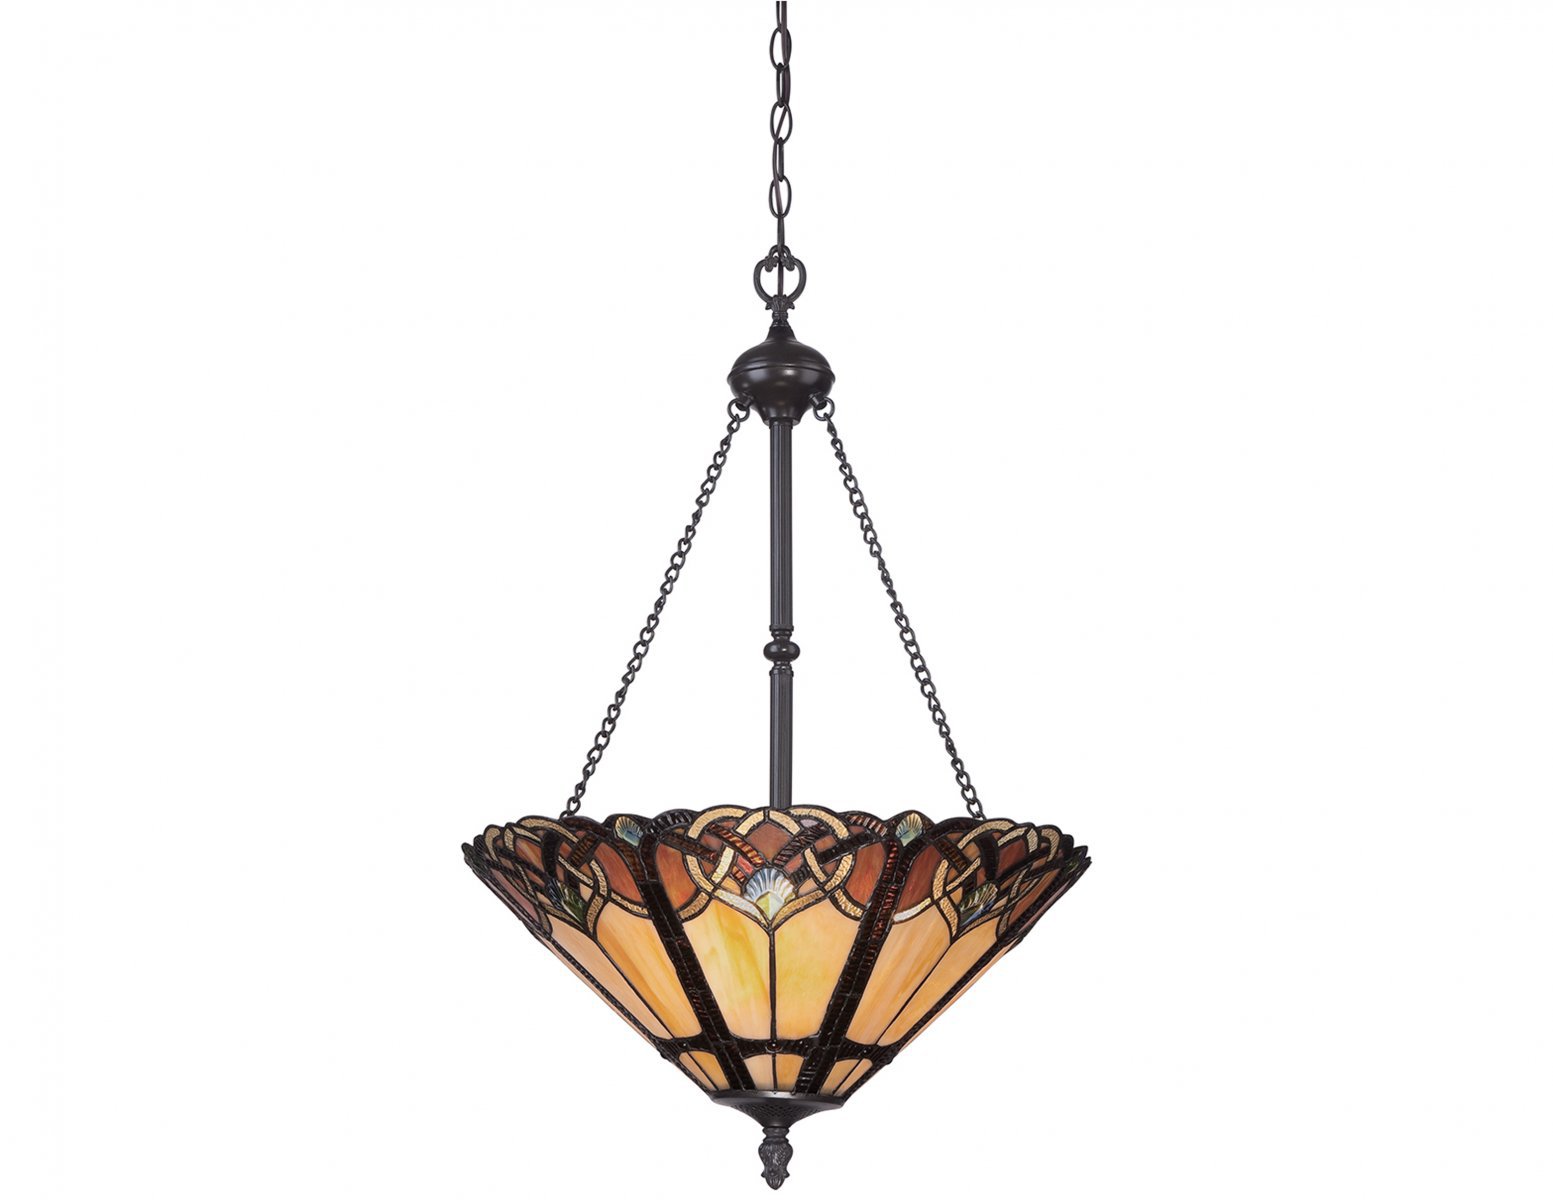 Lampa wisząca klasyczna klosz z artystyczną mozaiką złożoną z 371 elementów szkła